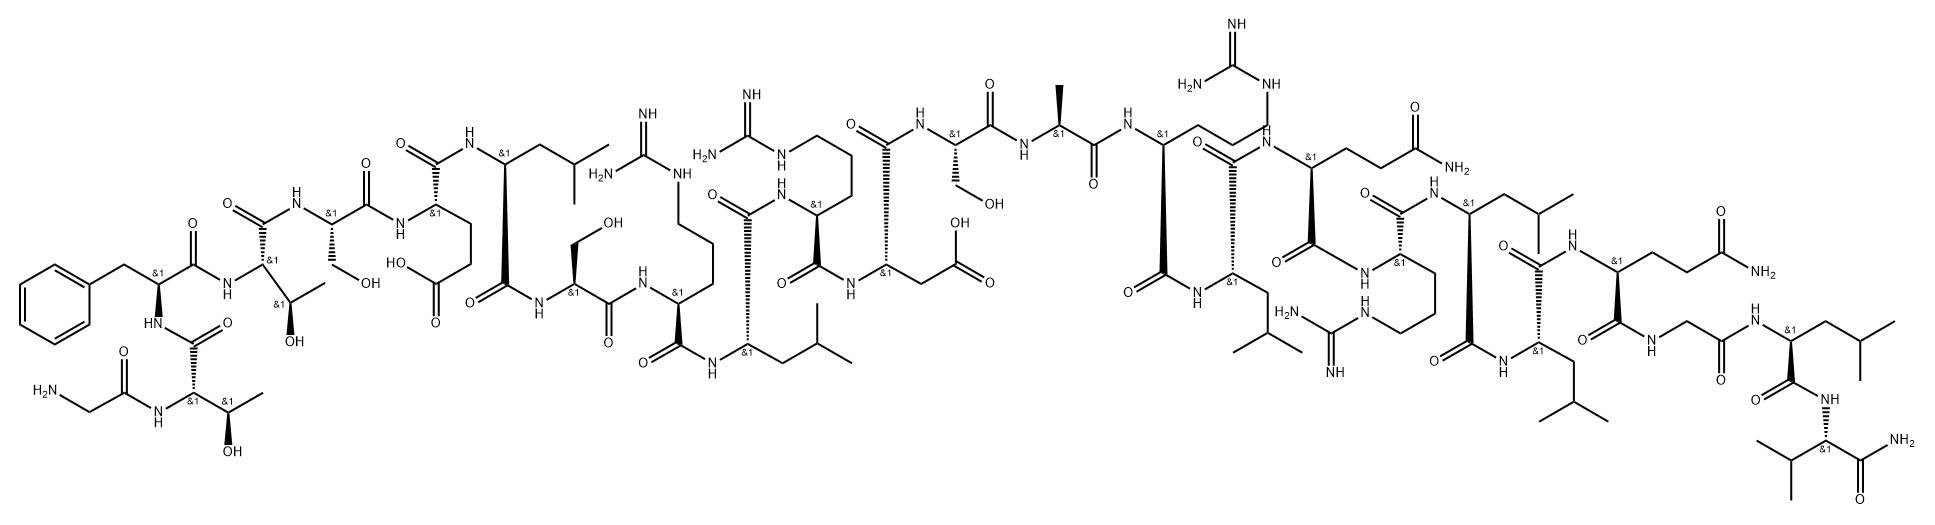 secretin (4-27) Struktur